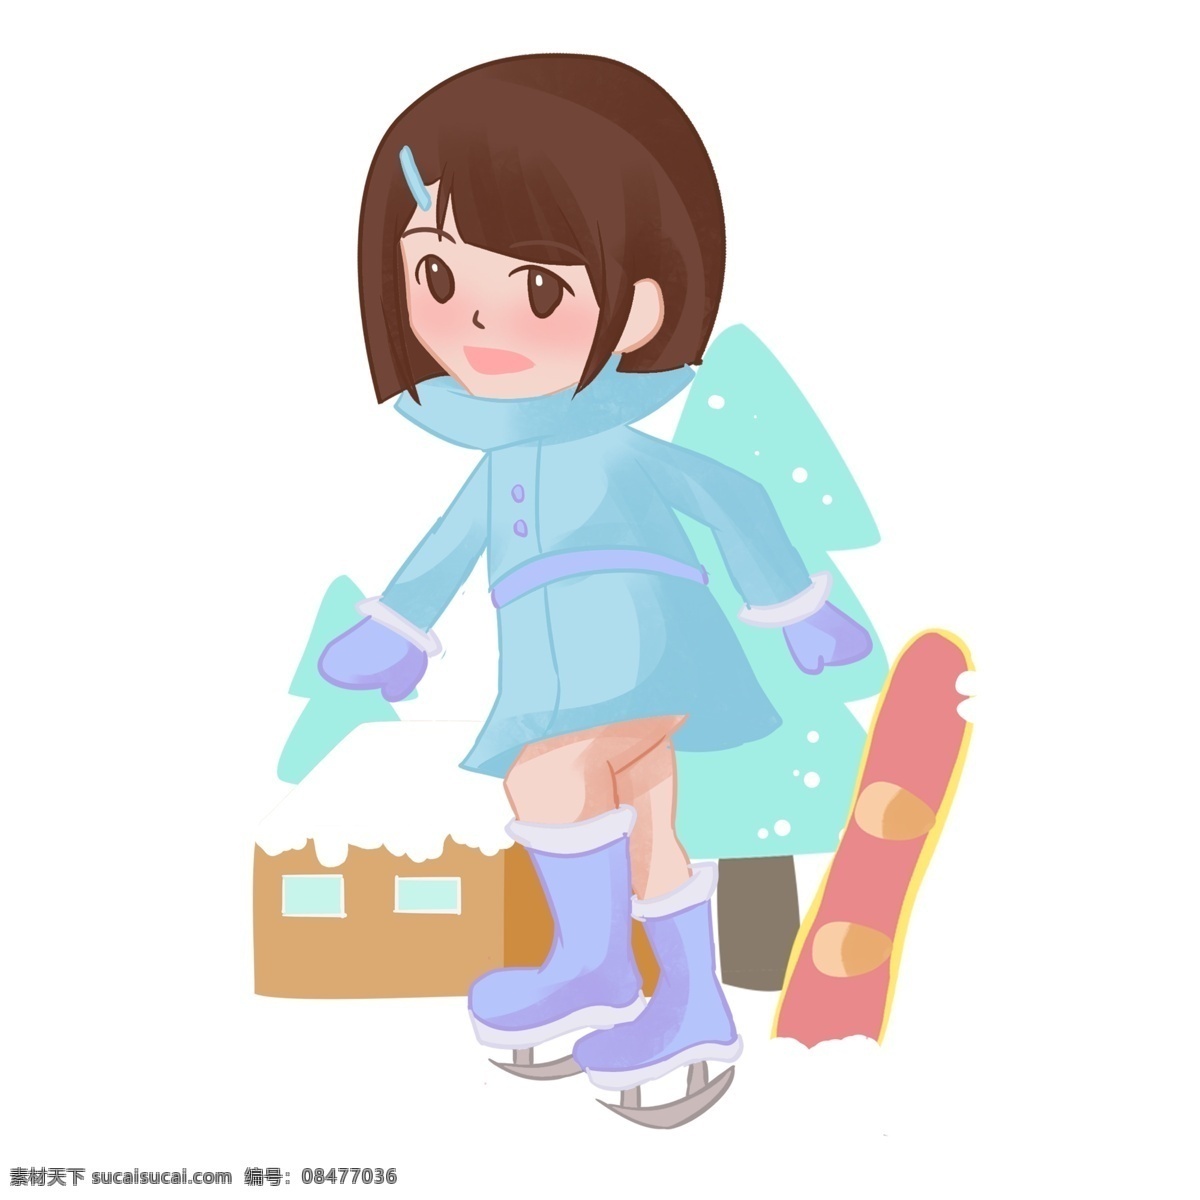 冬季 旅游 可爱 女孩 人物 插画 手绘女孩 冬季旅游 可爱女孩 冬季滑雪 滑雪场 冰雪运动 滑冰 滑冰场 人物插画